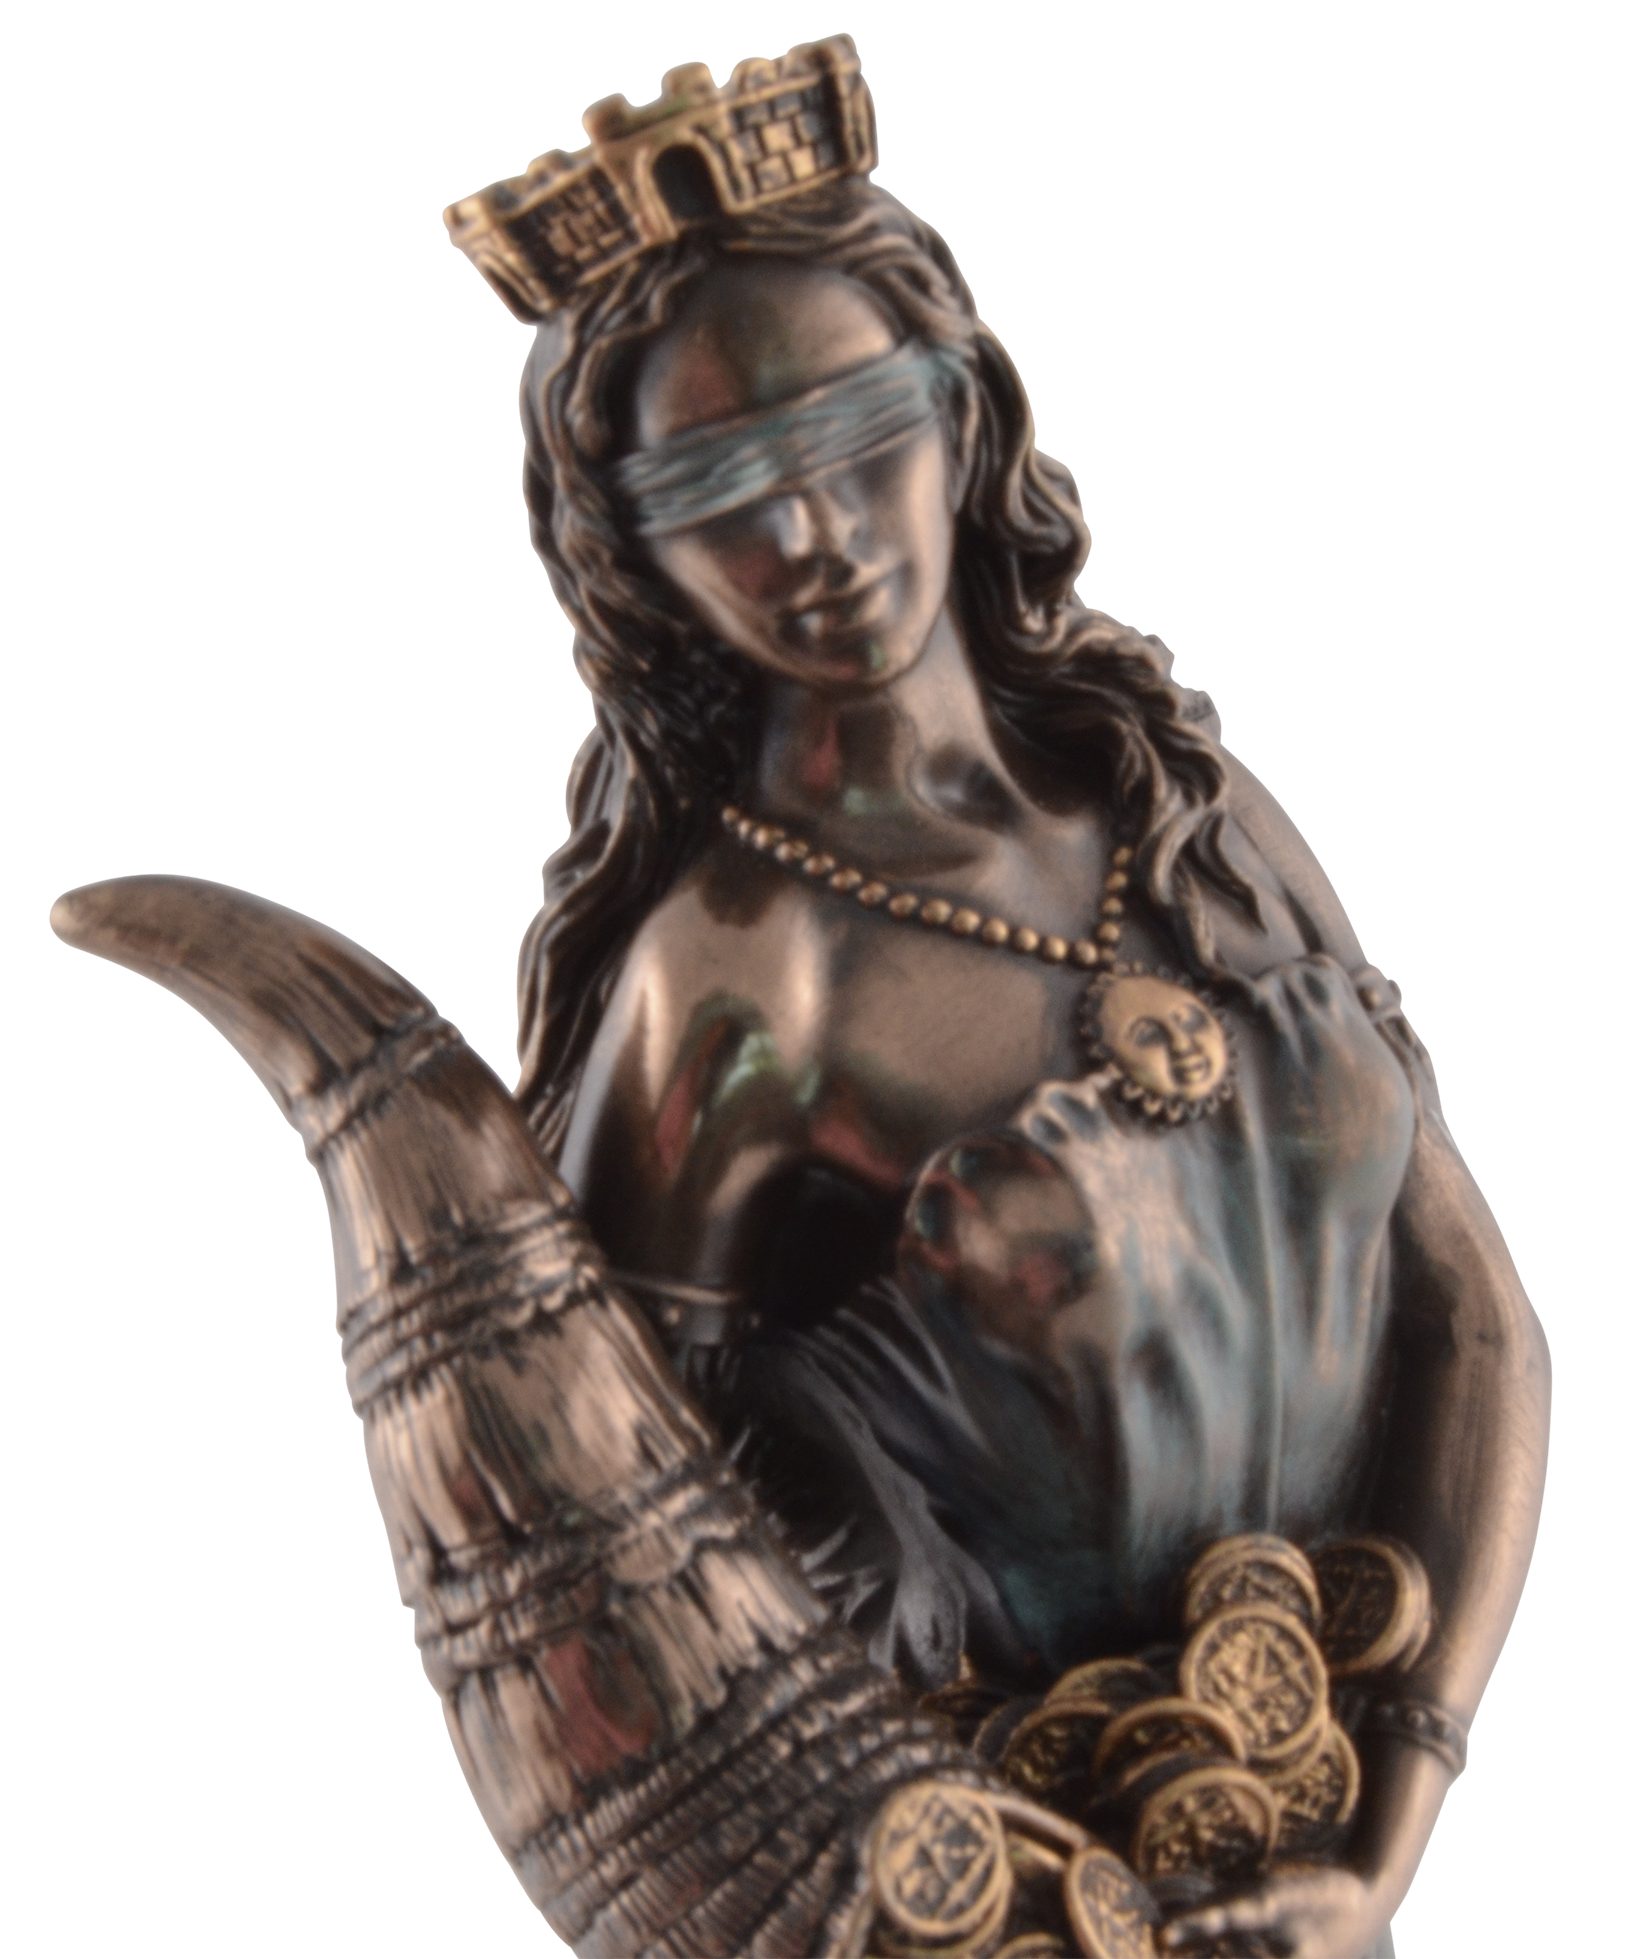 Göttin ca. Größe: direct bronziert, Gmbh 6x6x16 cm Fortuna, coloriert, Vogler Dekofigur Veronesedesign, Römische L/B/H